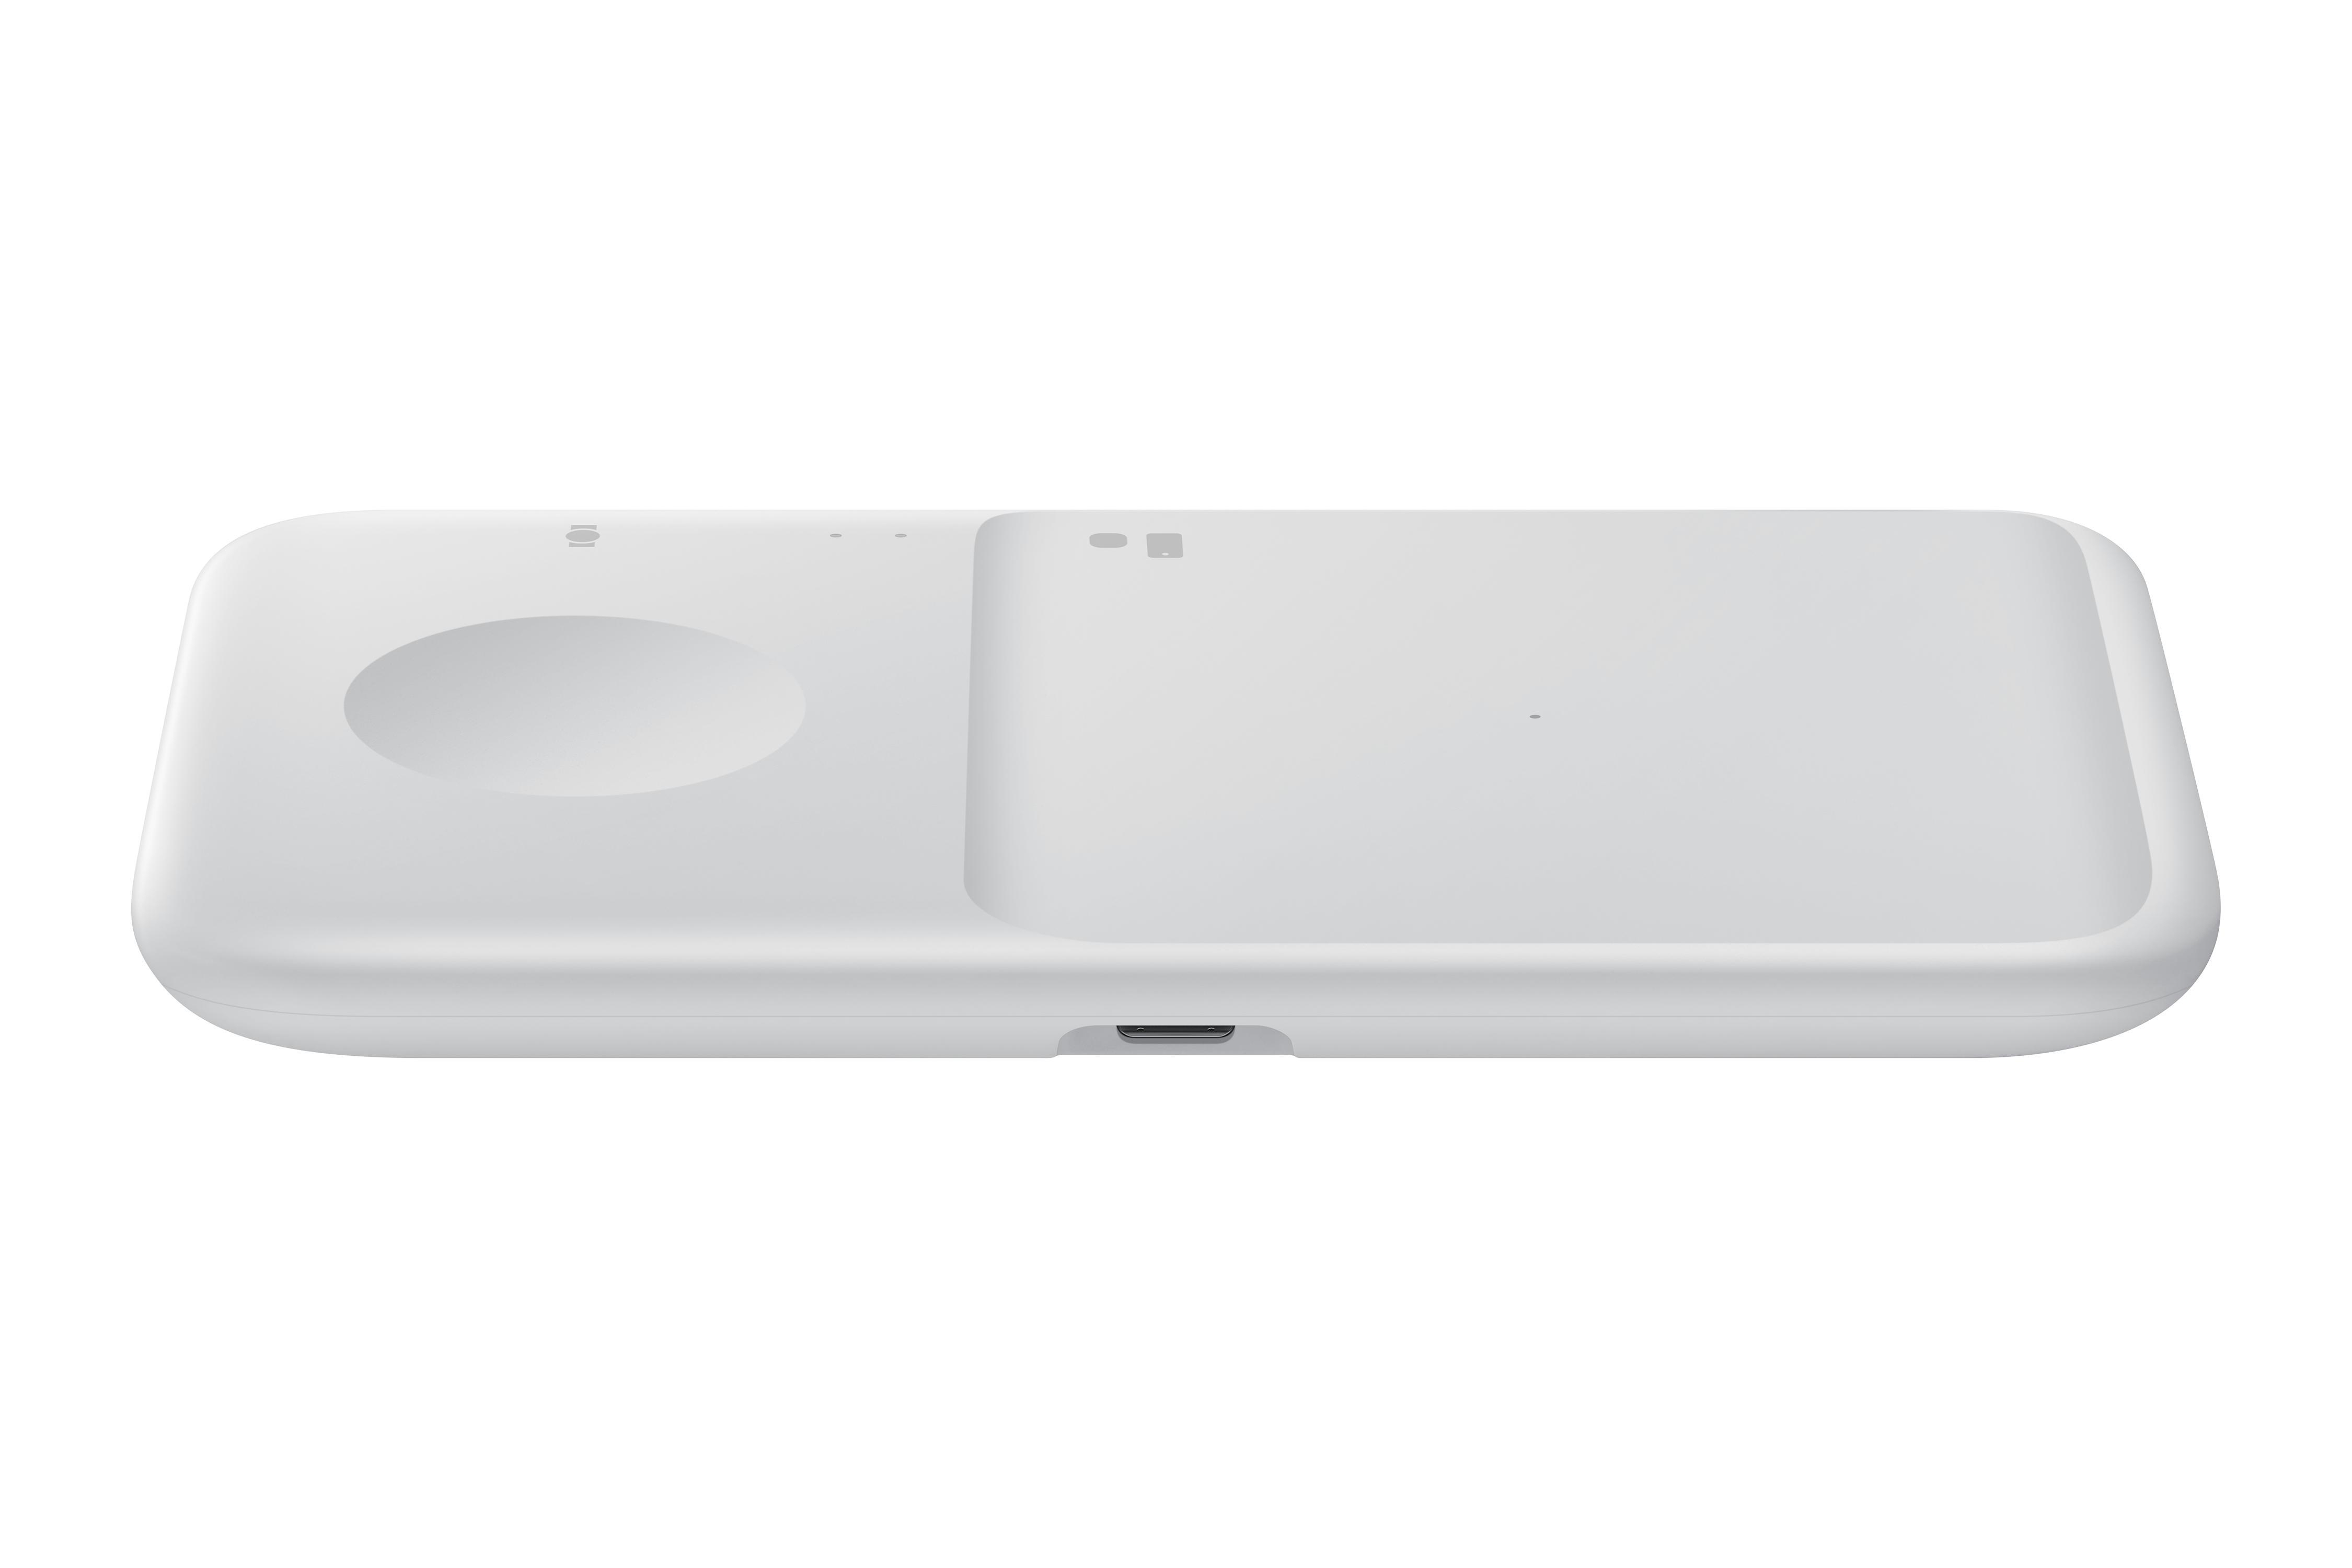 Hersteller, EP-P4300T Duo anderer Samsung, Ladegerät Weiß SAMSUNG Smartphones